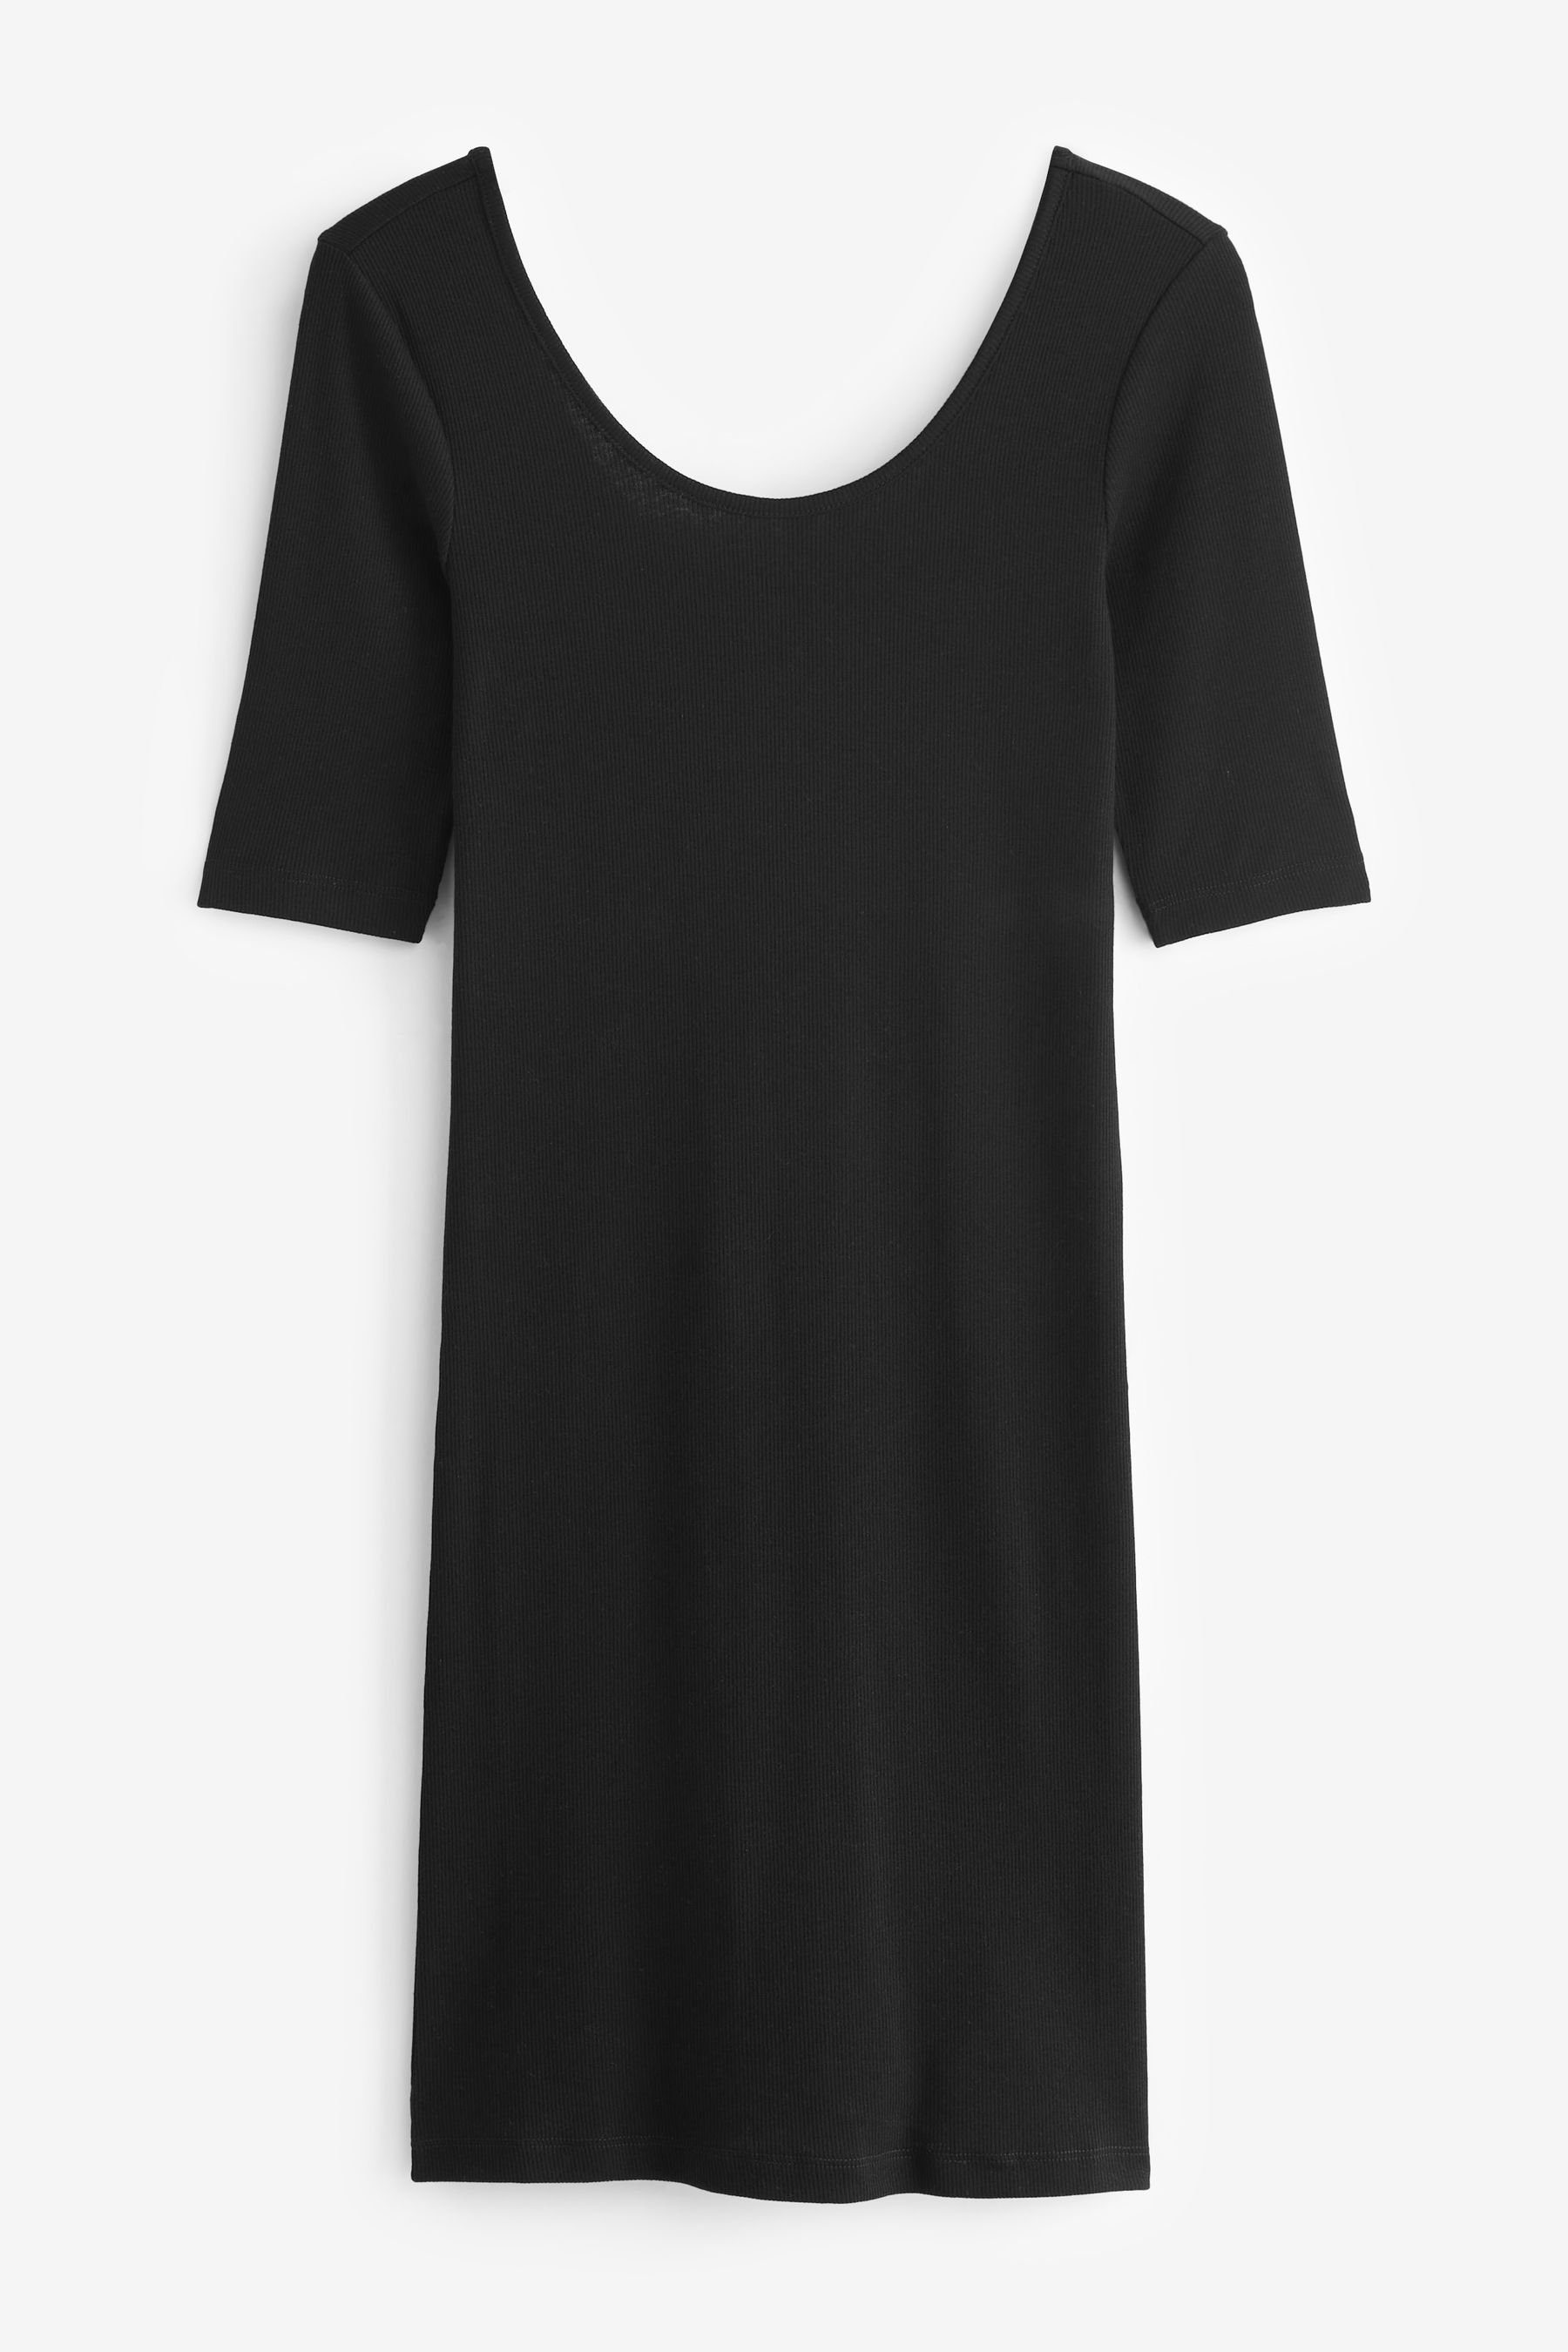 Next Jerseykleid (1-tlg) mit Geripptes Black U-Ausschnitt Kleid